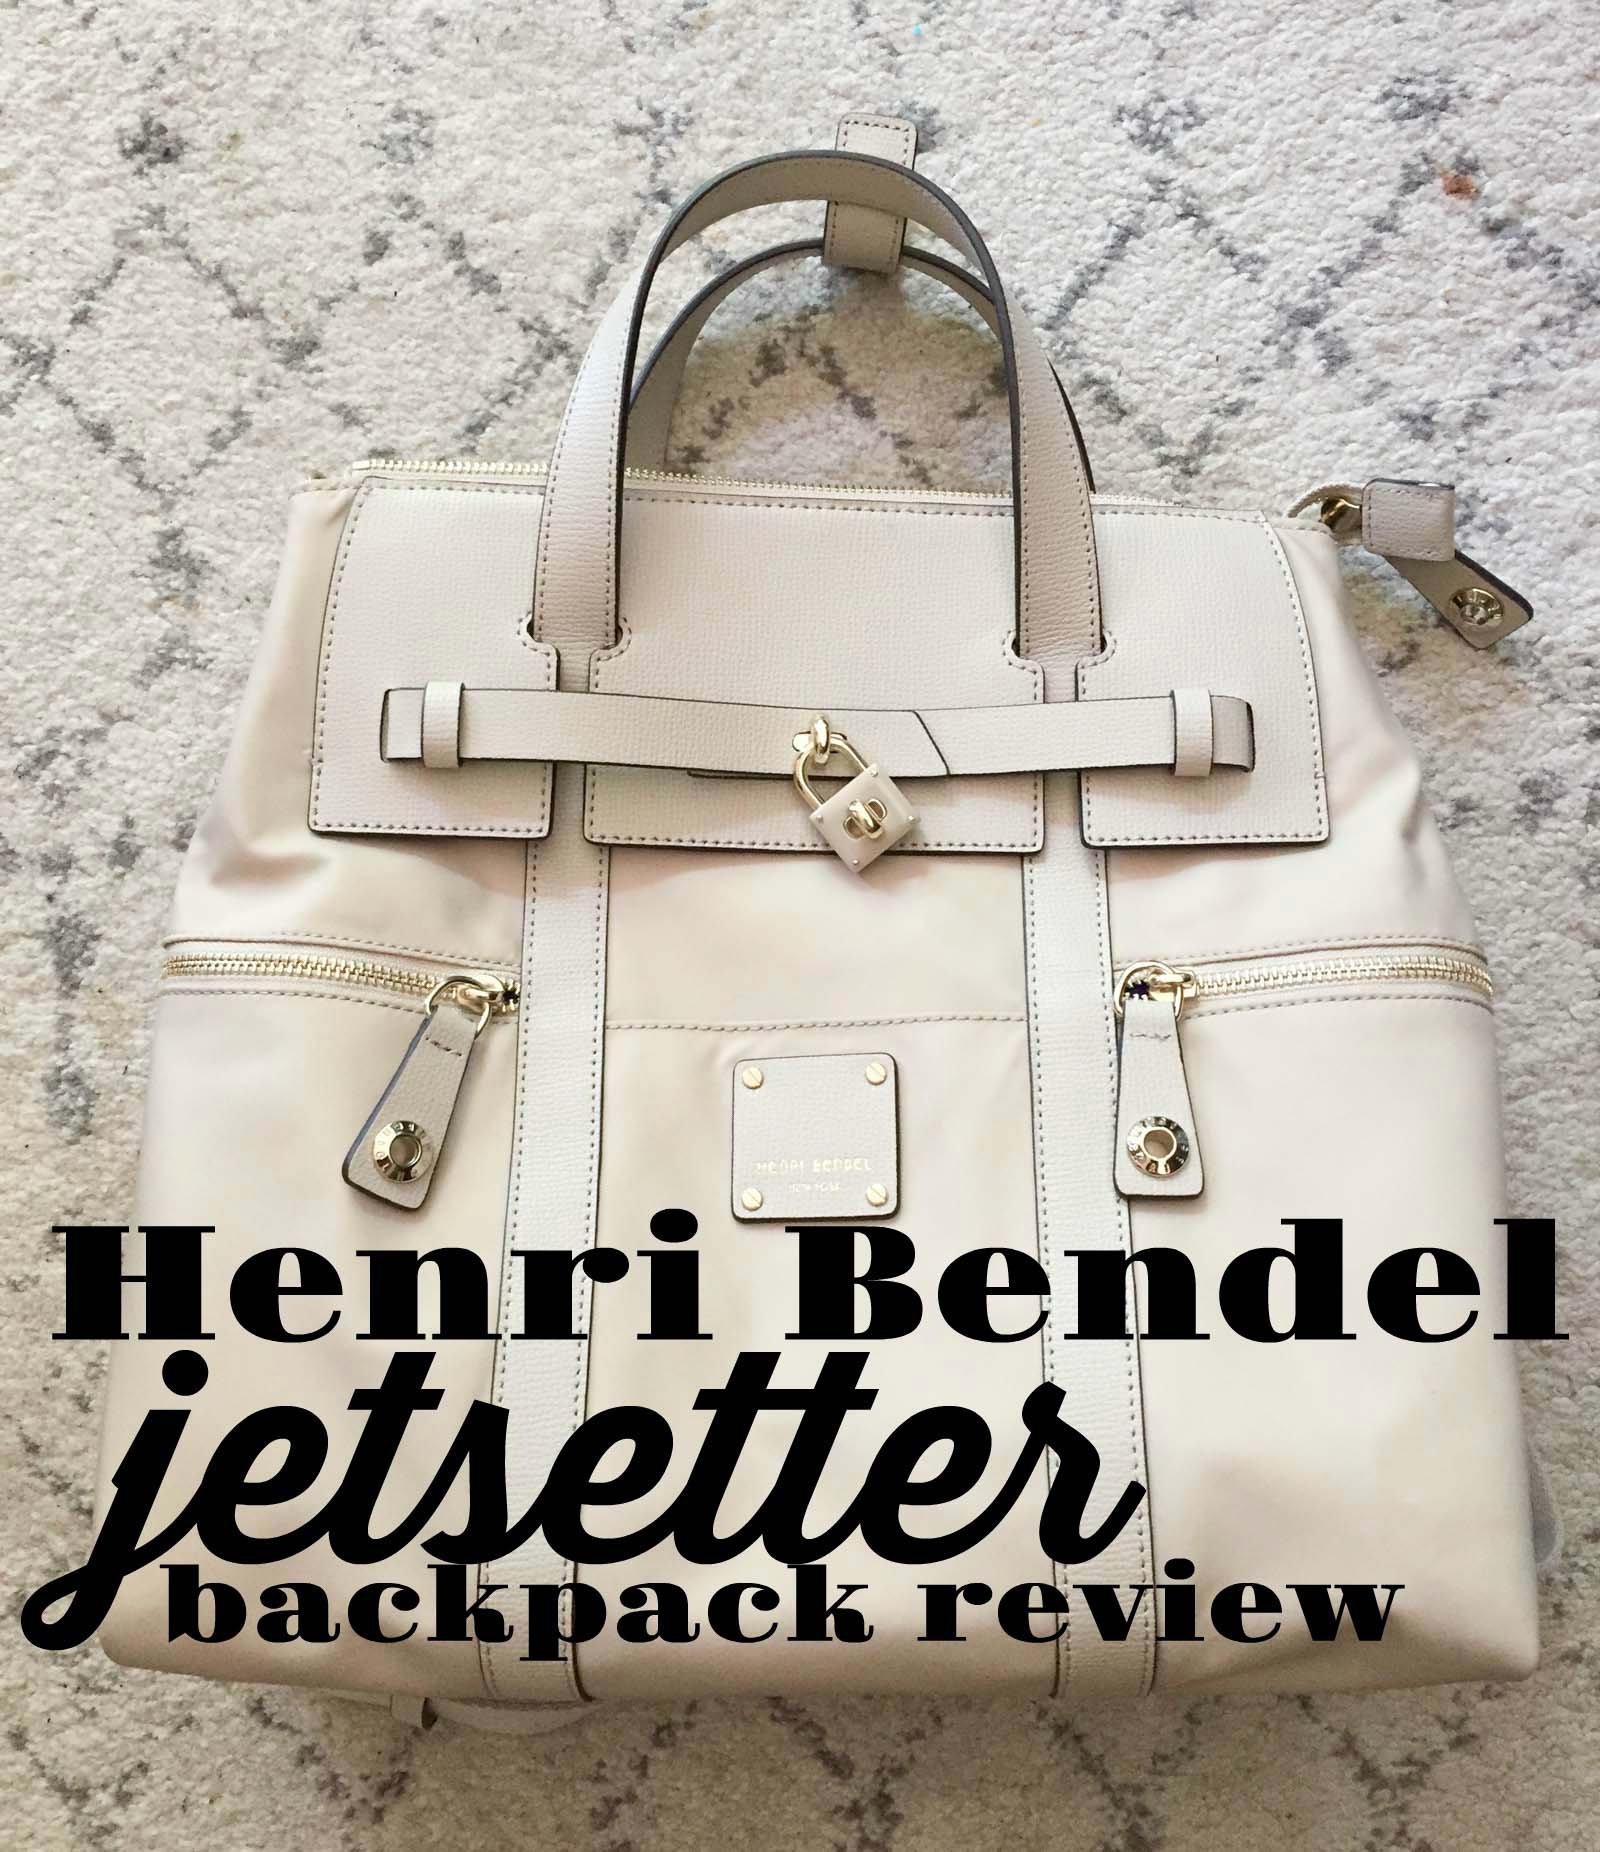 Henri Bendel Jetsetter Backpack review